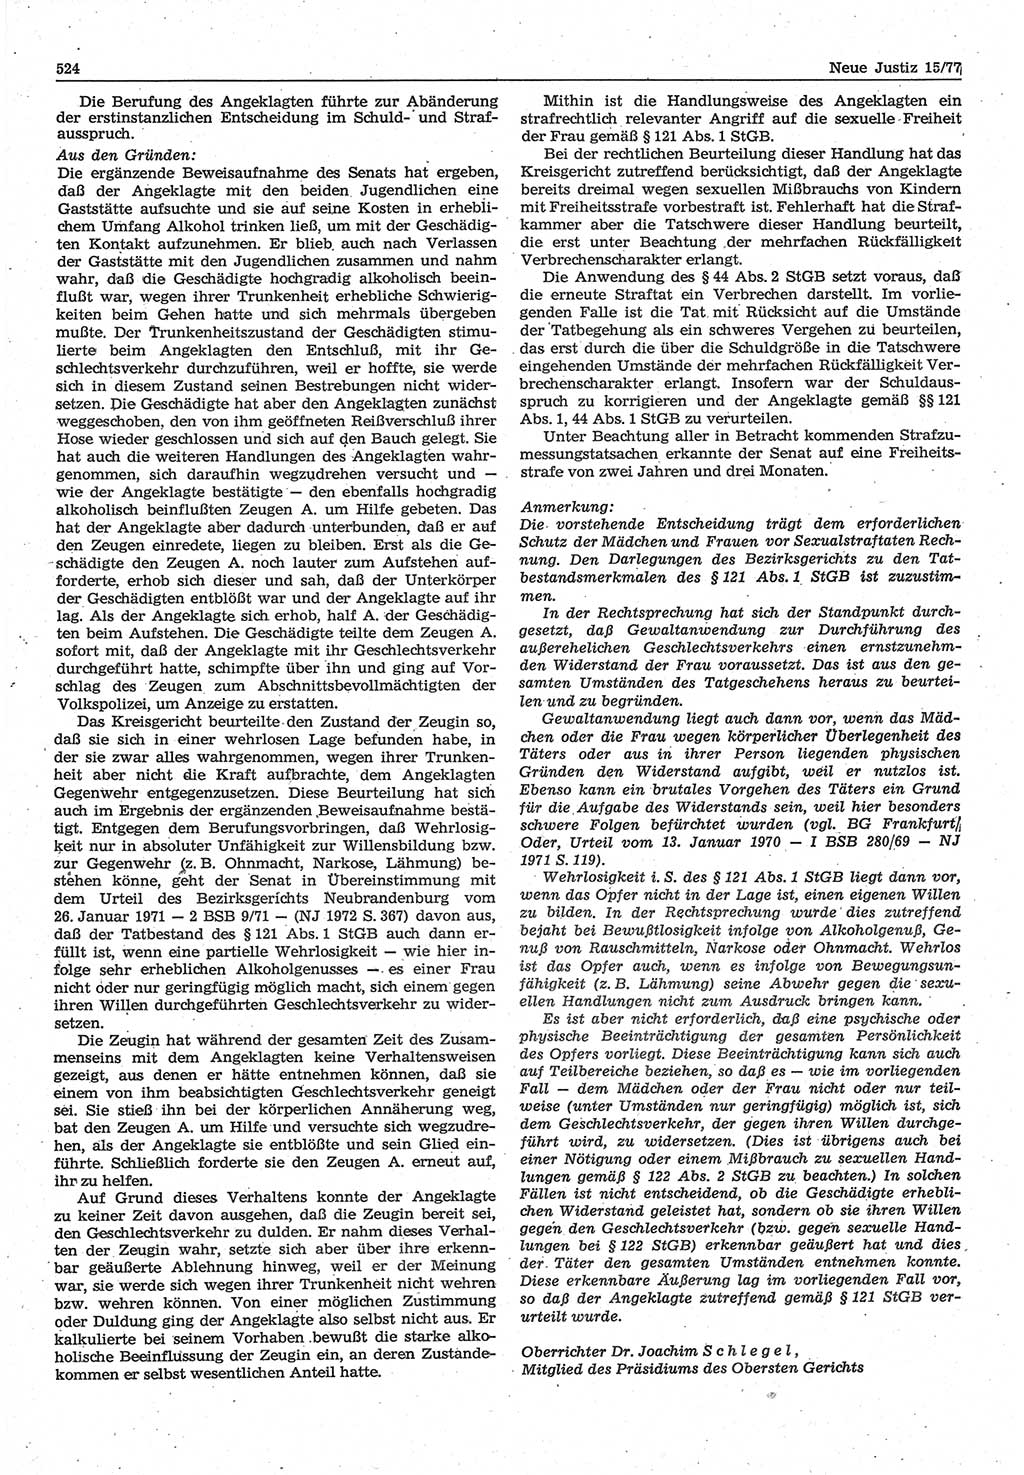 Neue Justiz (NJ), Zeitschrift für Recht und Rechtswissenschaft-Zeitschrift, sozialistisches Recht und Gesetzlichkeit, 31. Jahrgang 1977, Seite 524 (NJ DDR 1977, S. 524)